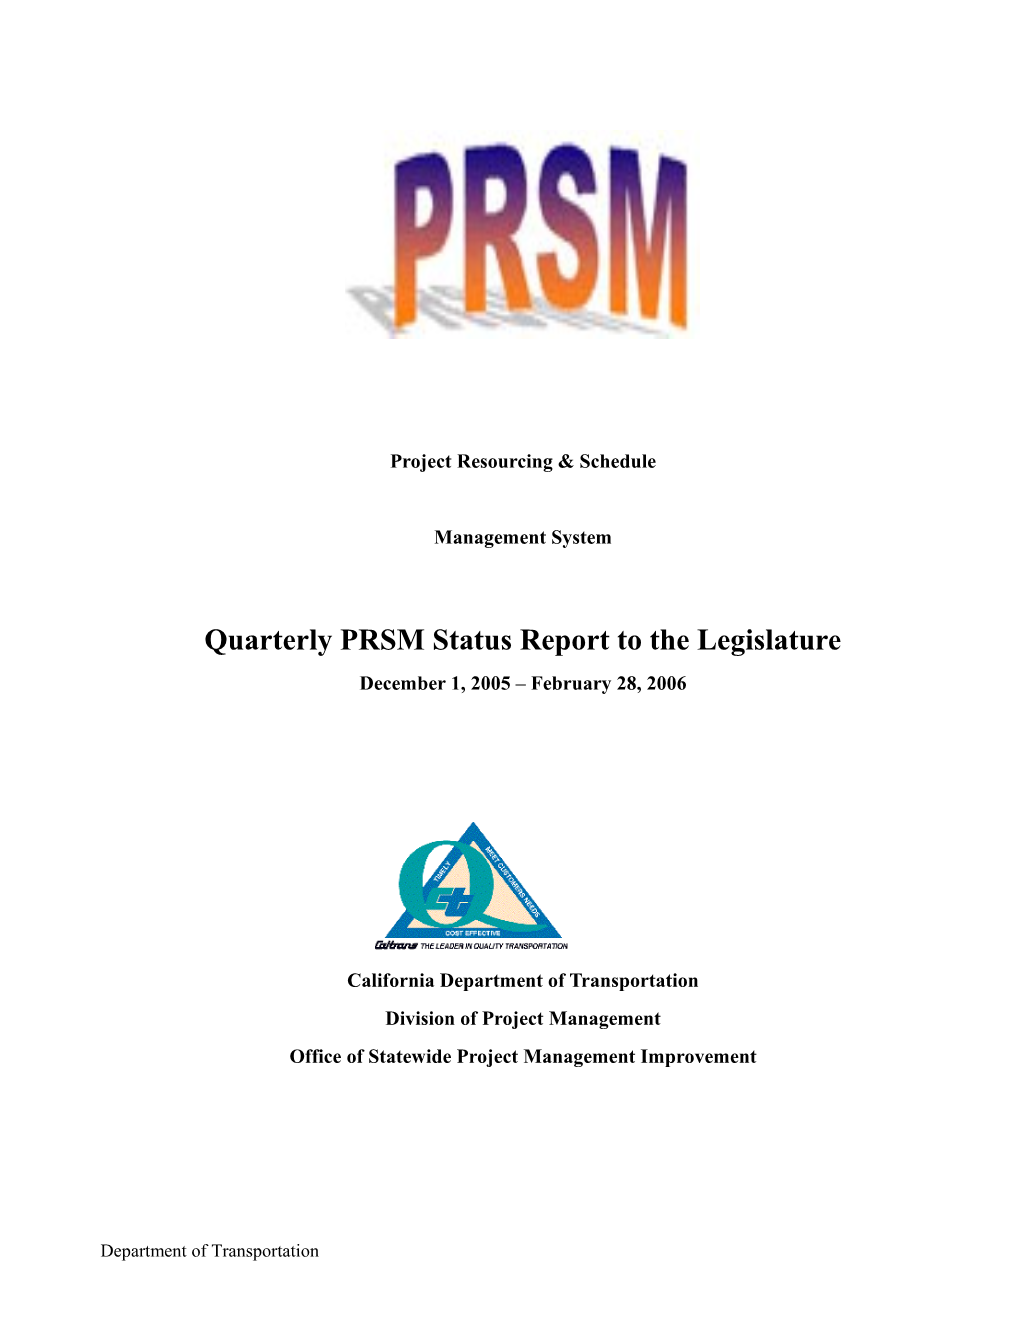 Quarterly Status Report to the Legislature